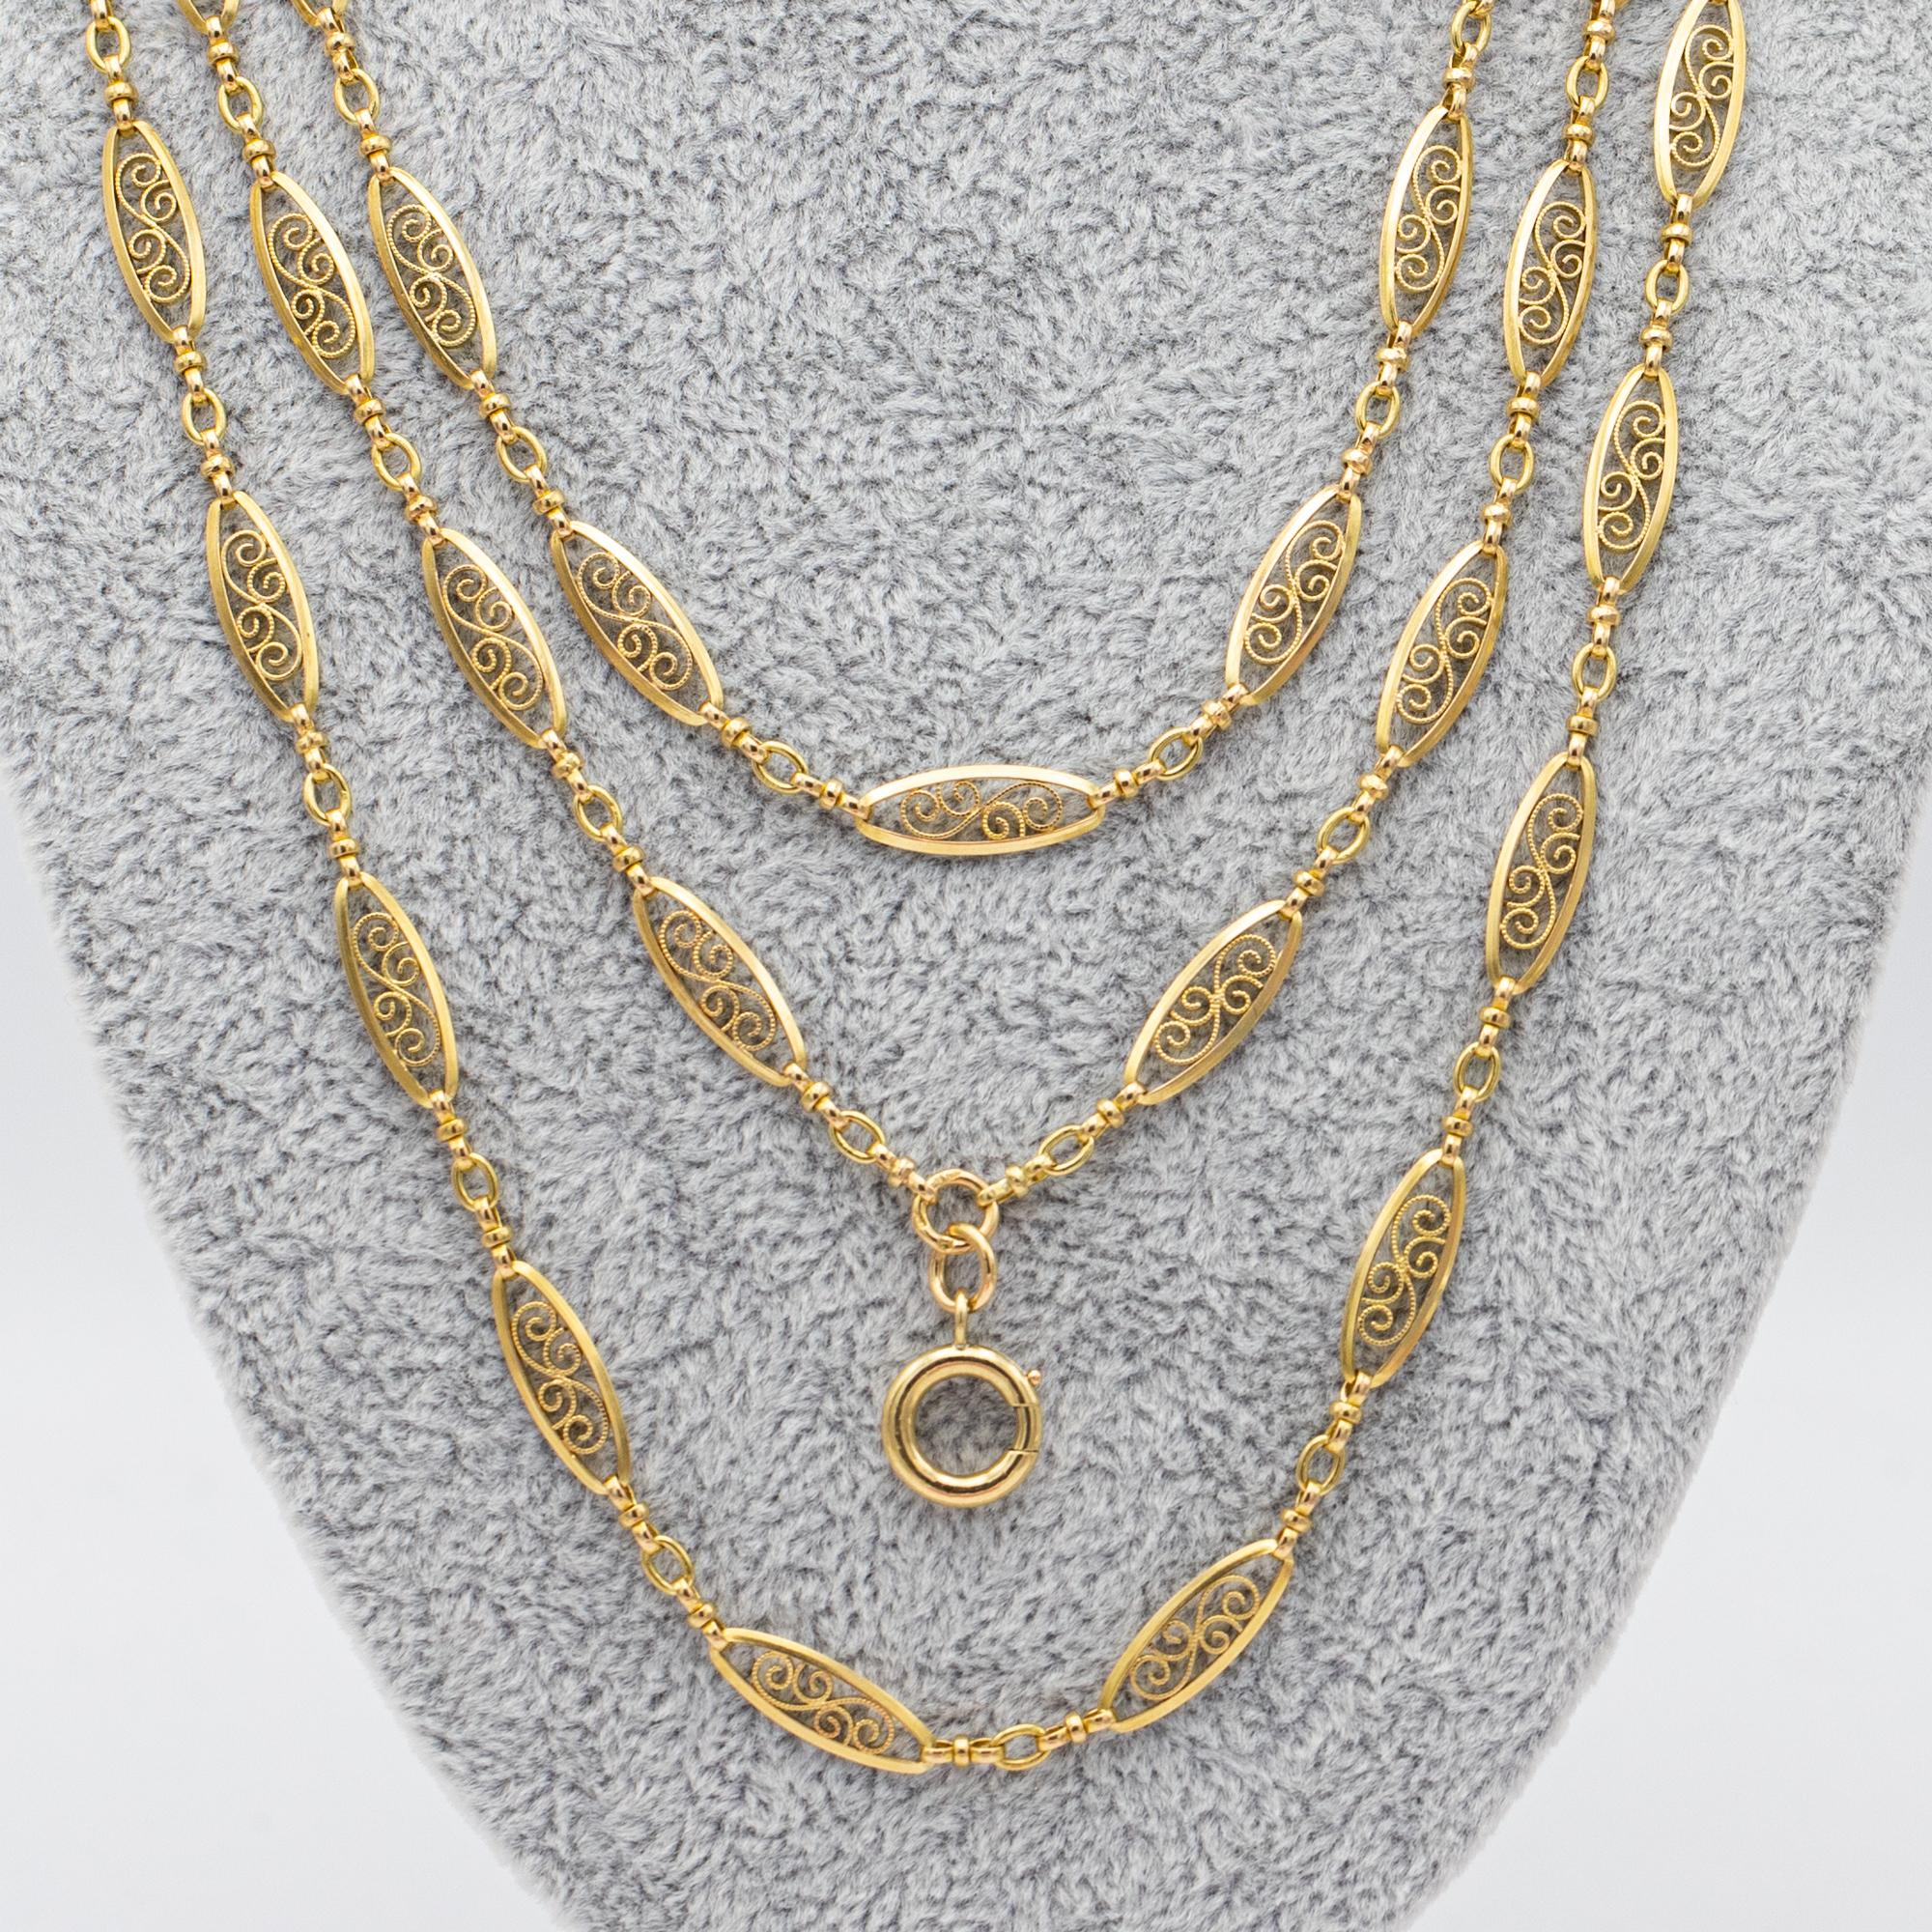 Antique 18k gold Sautoir necklace, 155cm long guard, Victorian double rope chain 4